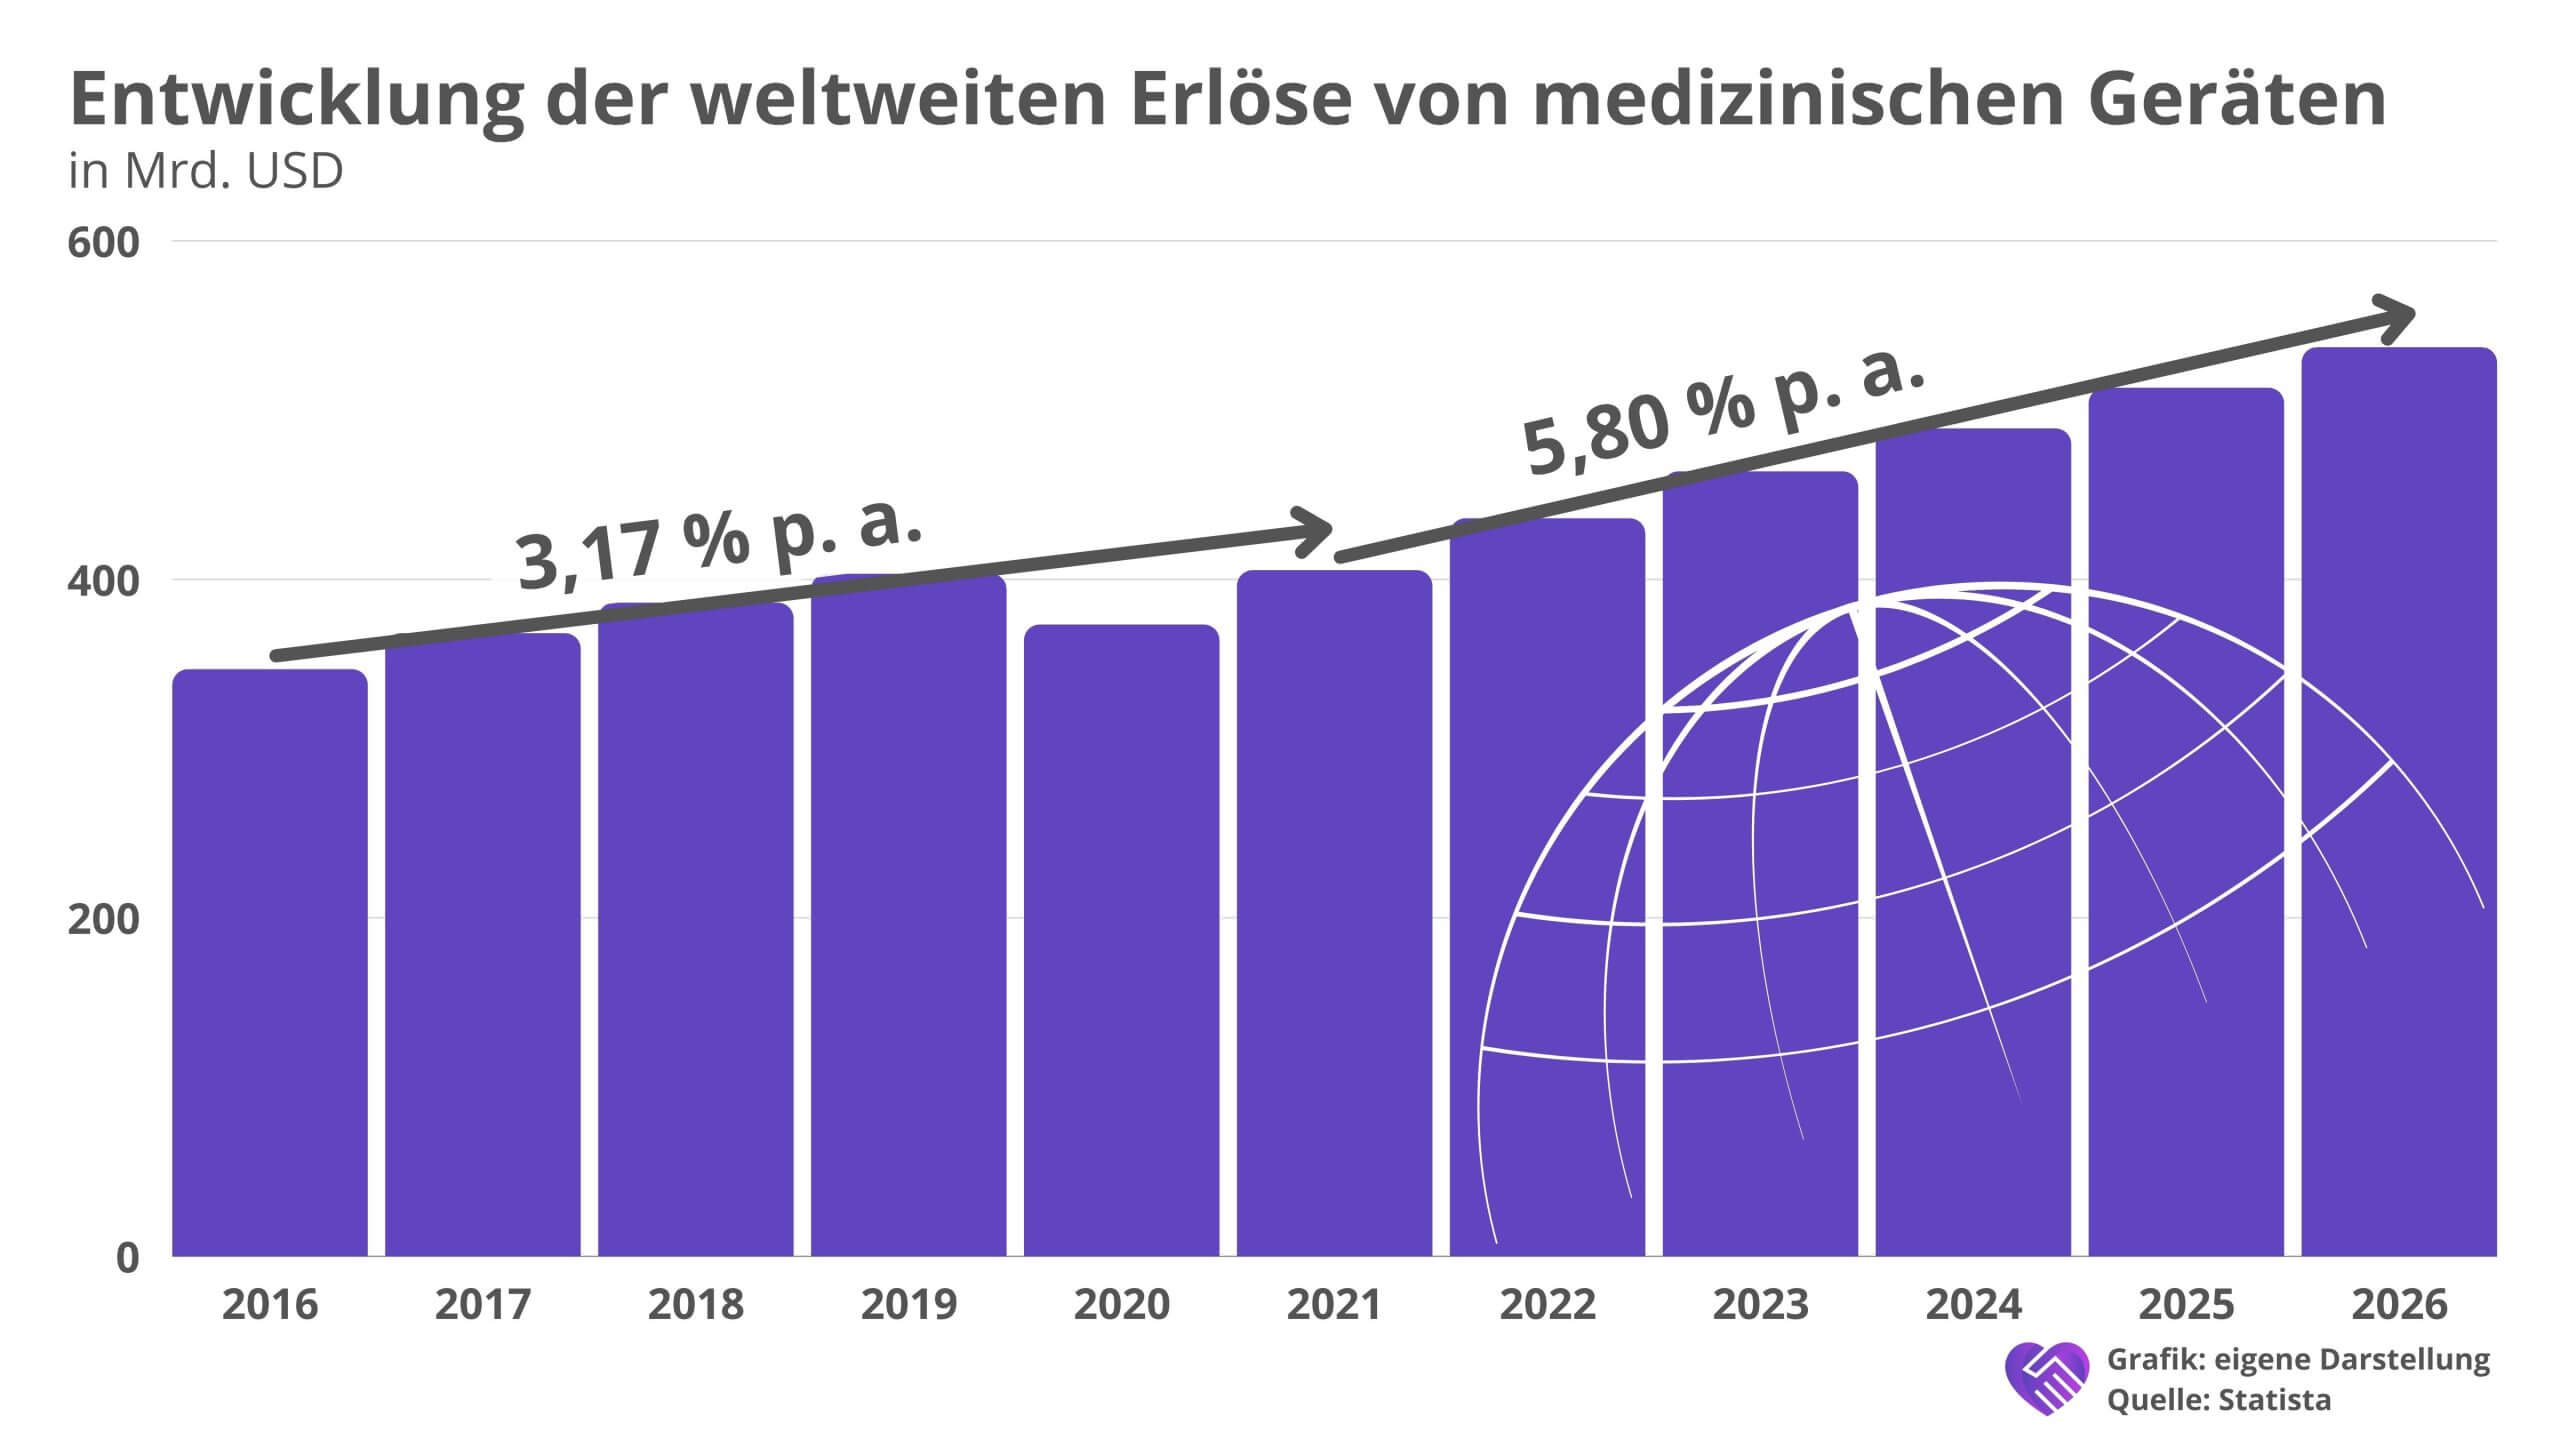 Carl Zeiss Meditec Aktie Analyse – Marktführer aus dem deutschen Mittelstand